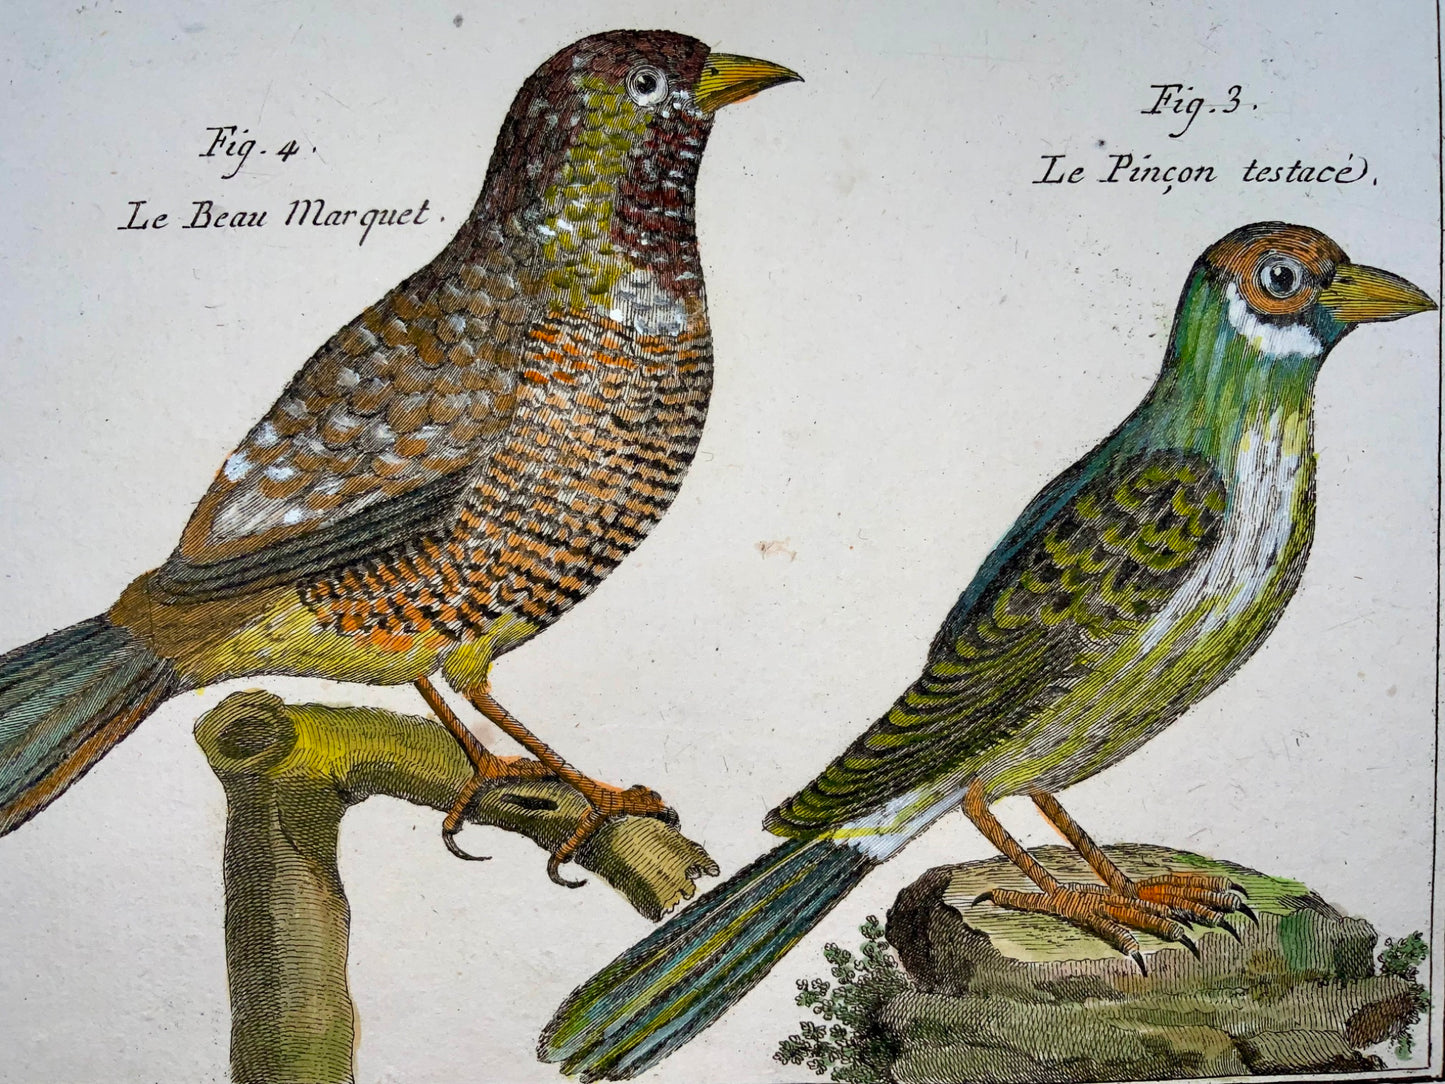 1789 Fringuello, Benard sc. quarto, colore a mano, incisione, ornitologia